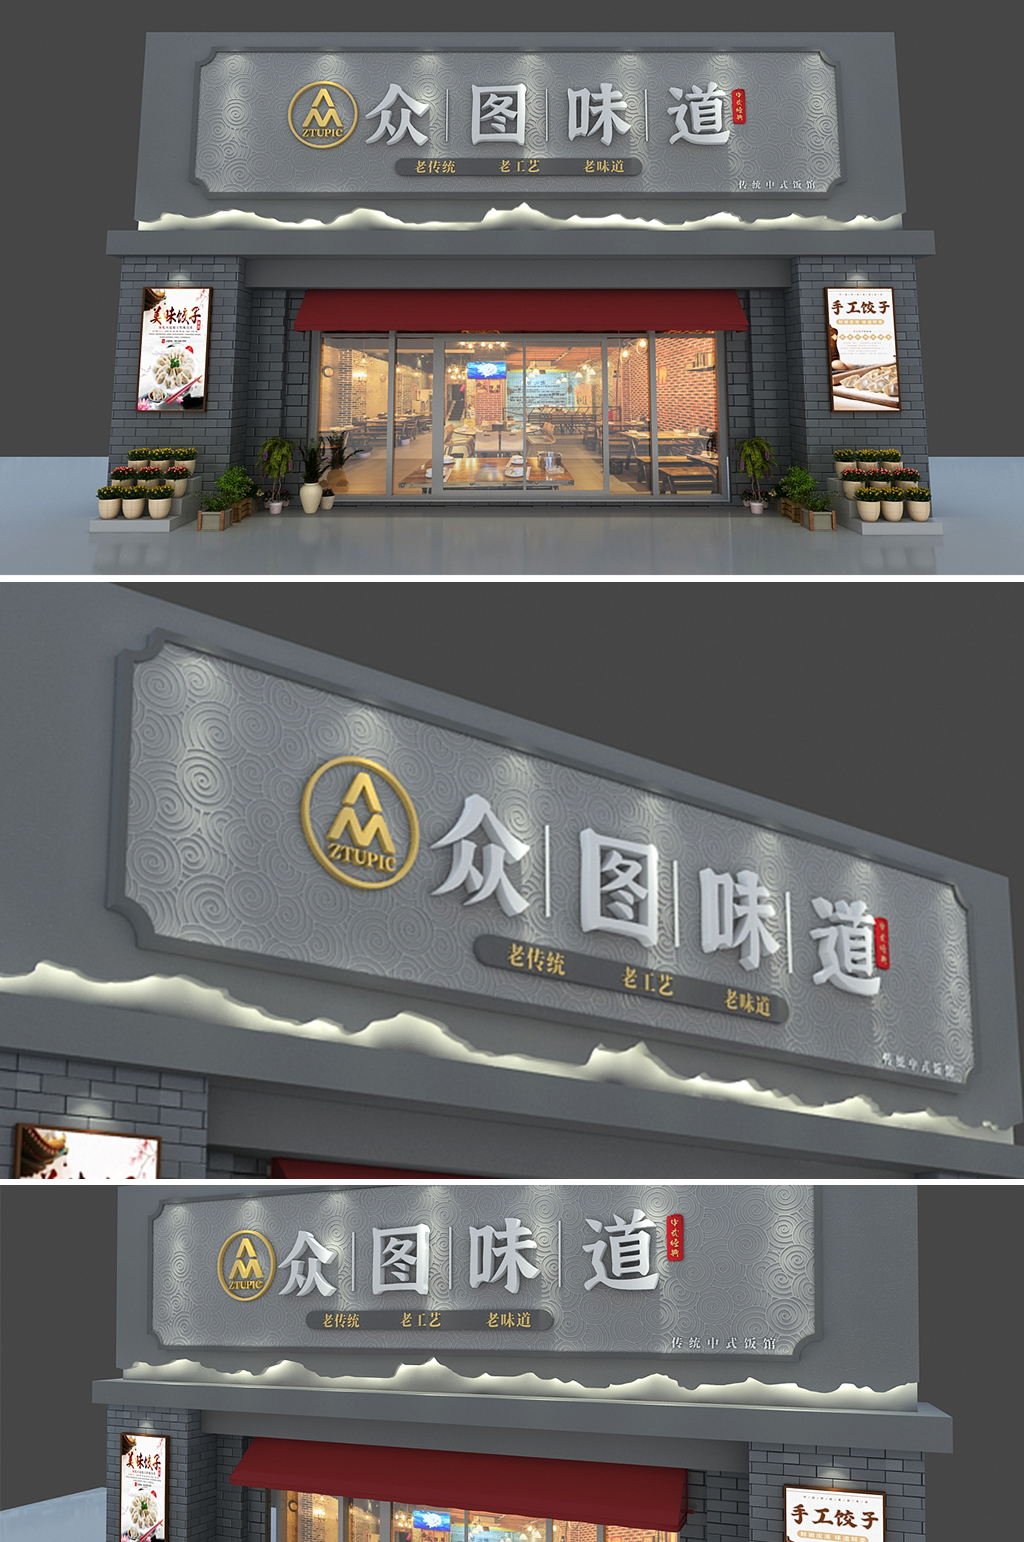 中式餐馆招牌品牌门头店面设计